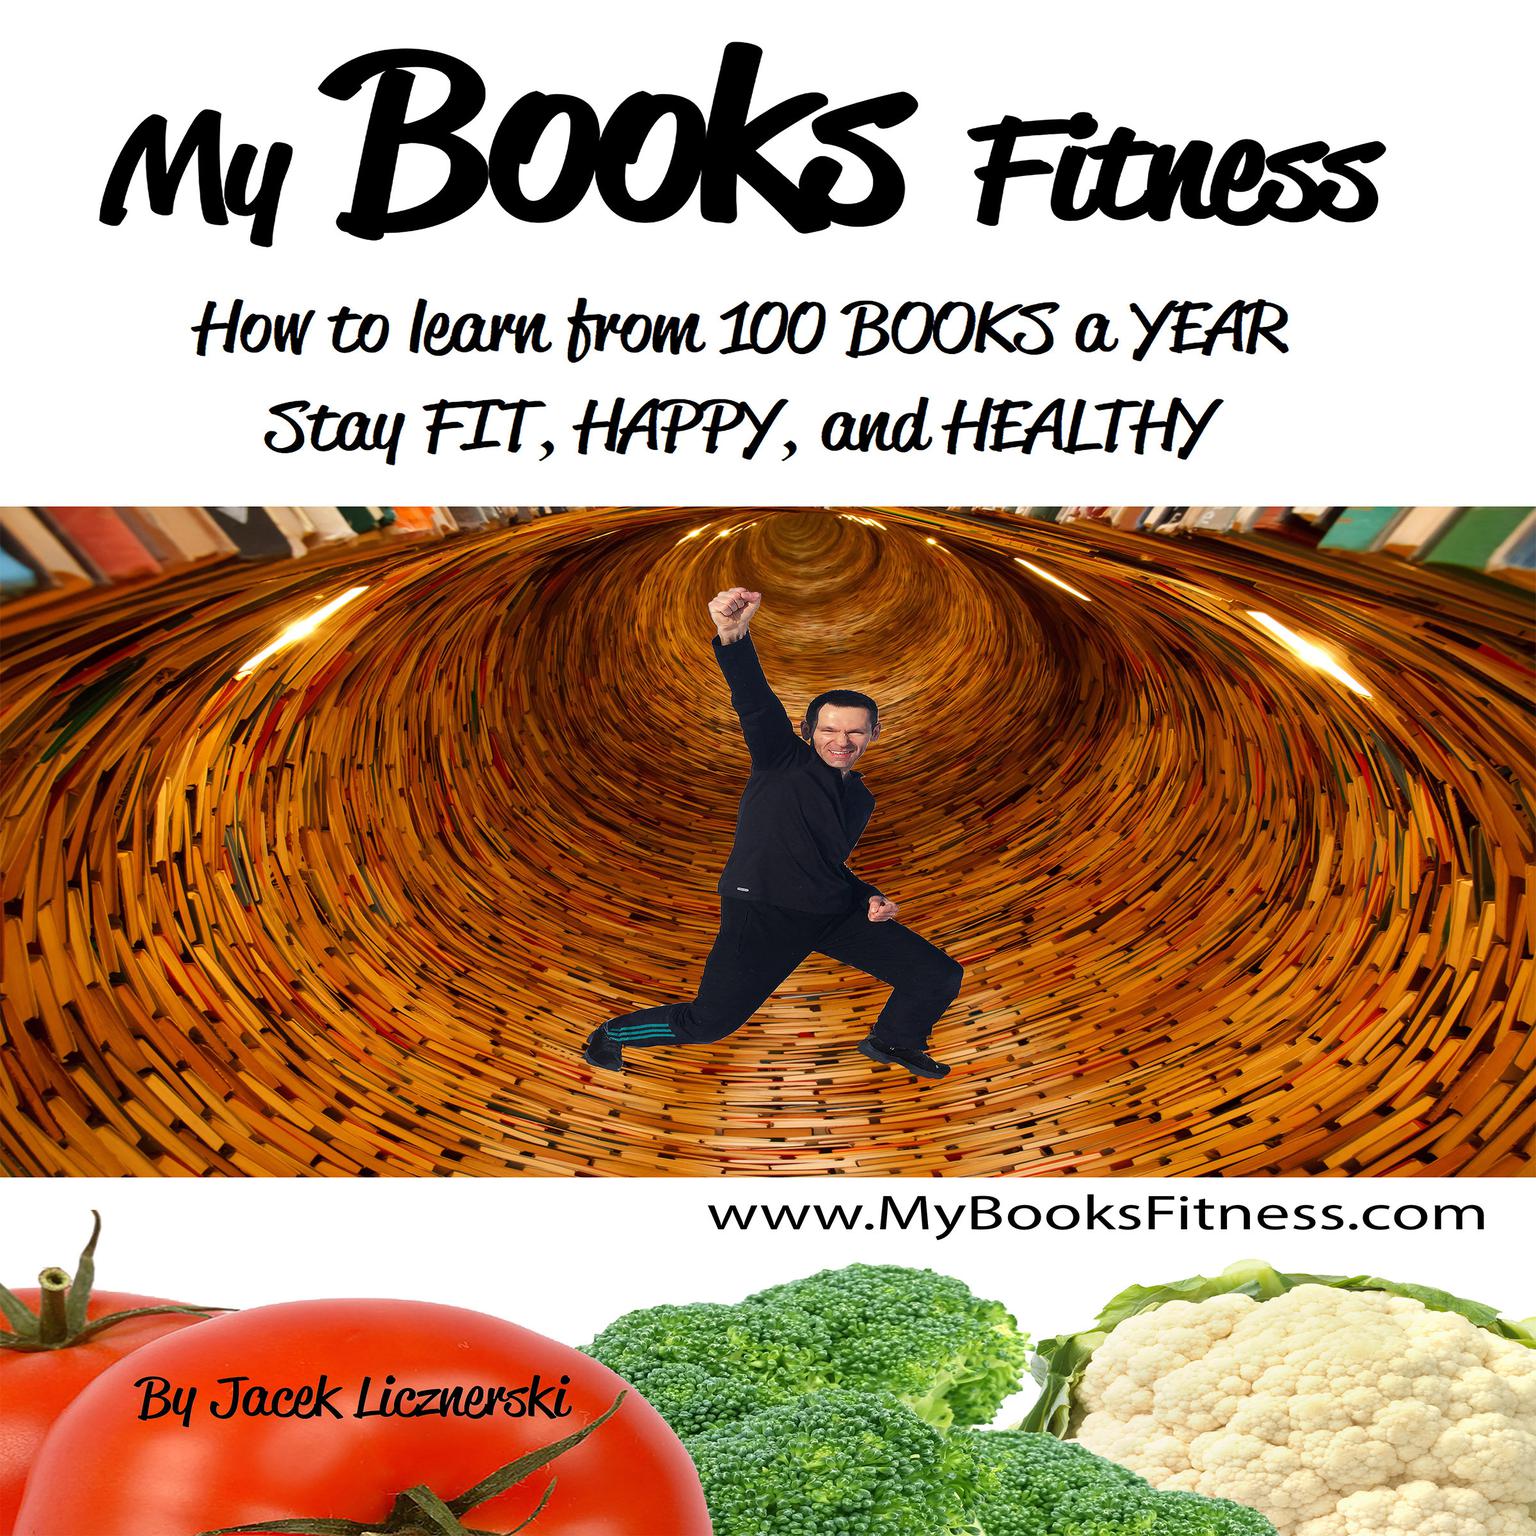 My Books Fitness Audiobook, by Jacek Licznerski